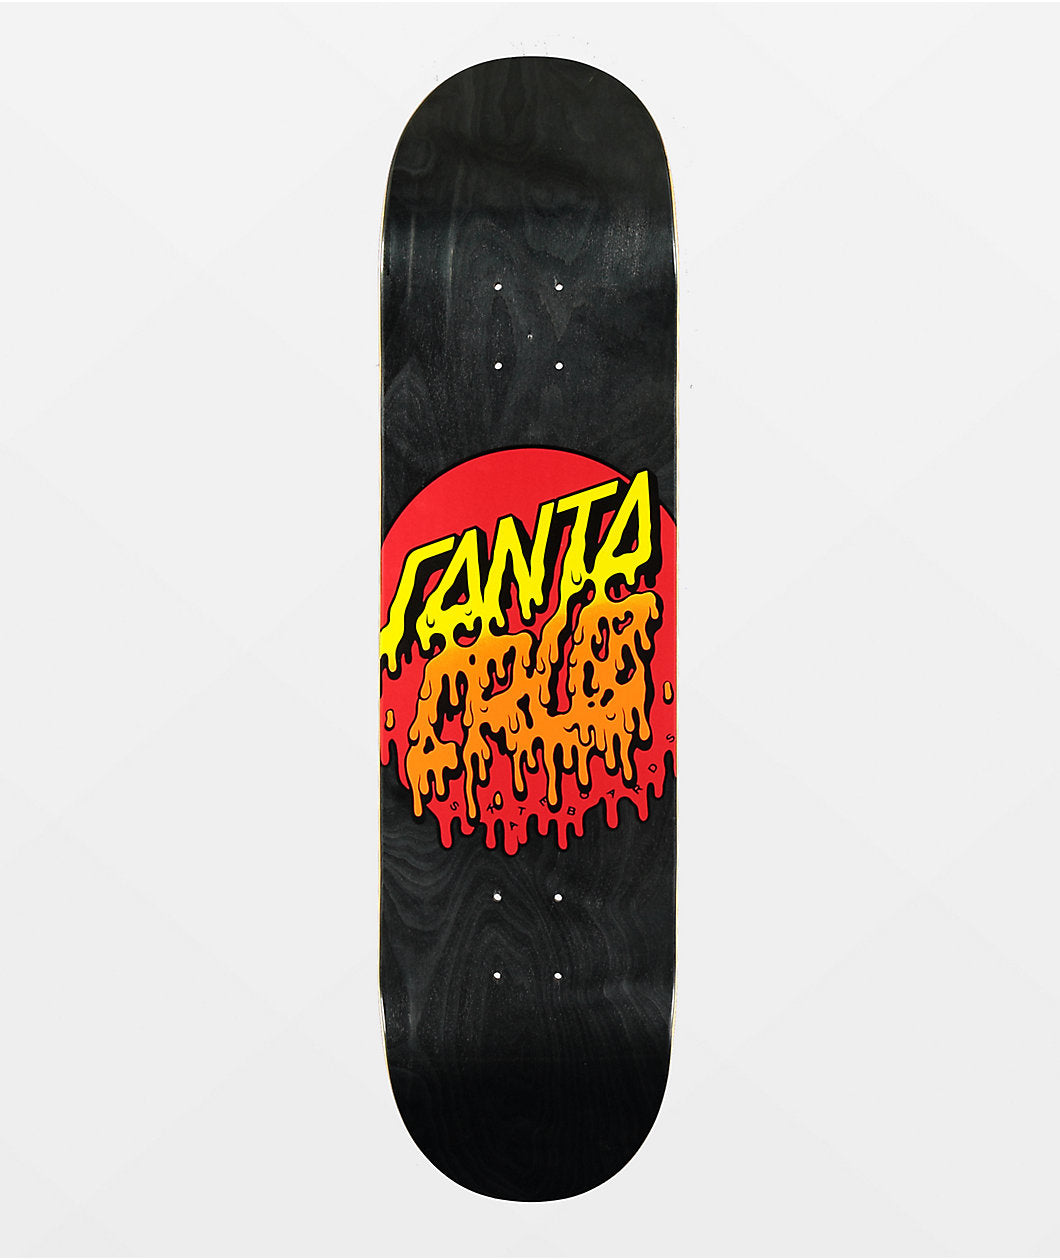 Rad Dot 7 Ply Birch Skateboard Deck 8.0in x 31.6in Santa Cruz